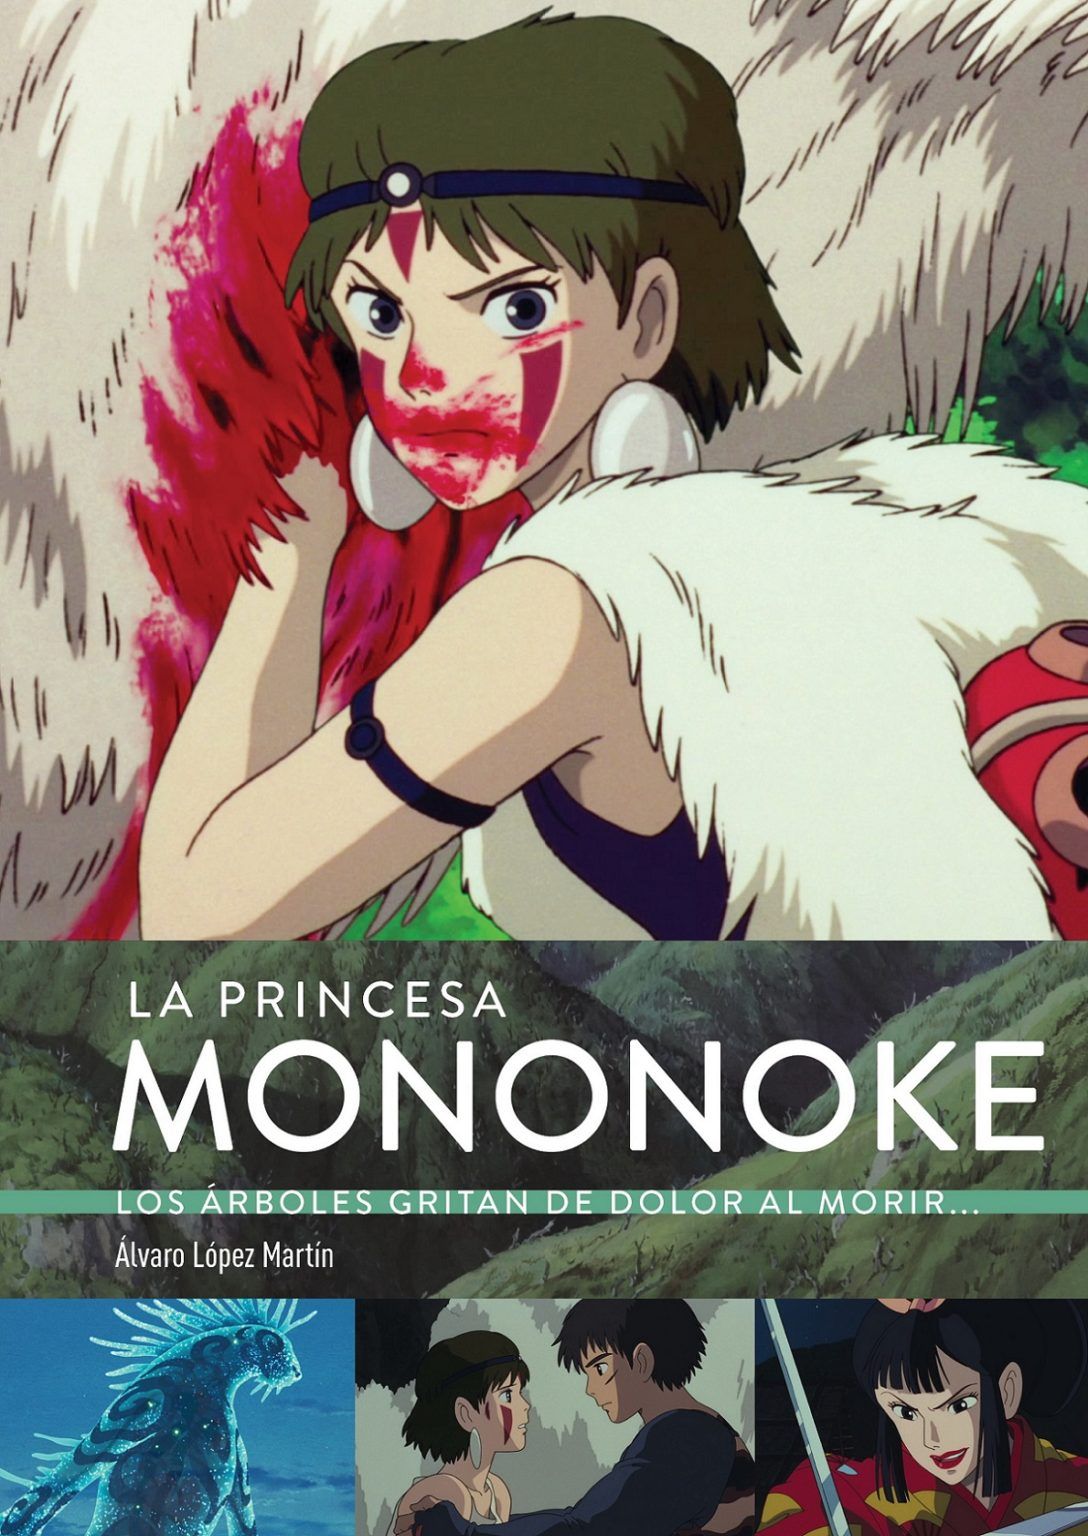 La Princesa Mononoke. Los árboles gritan de dolor al morir